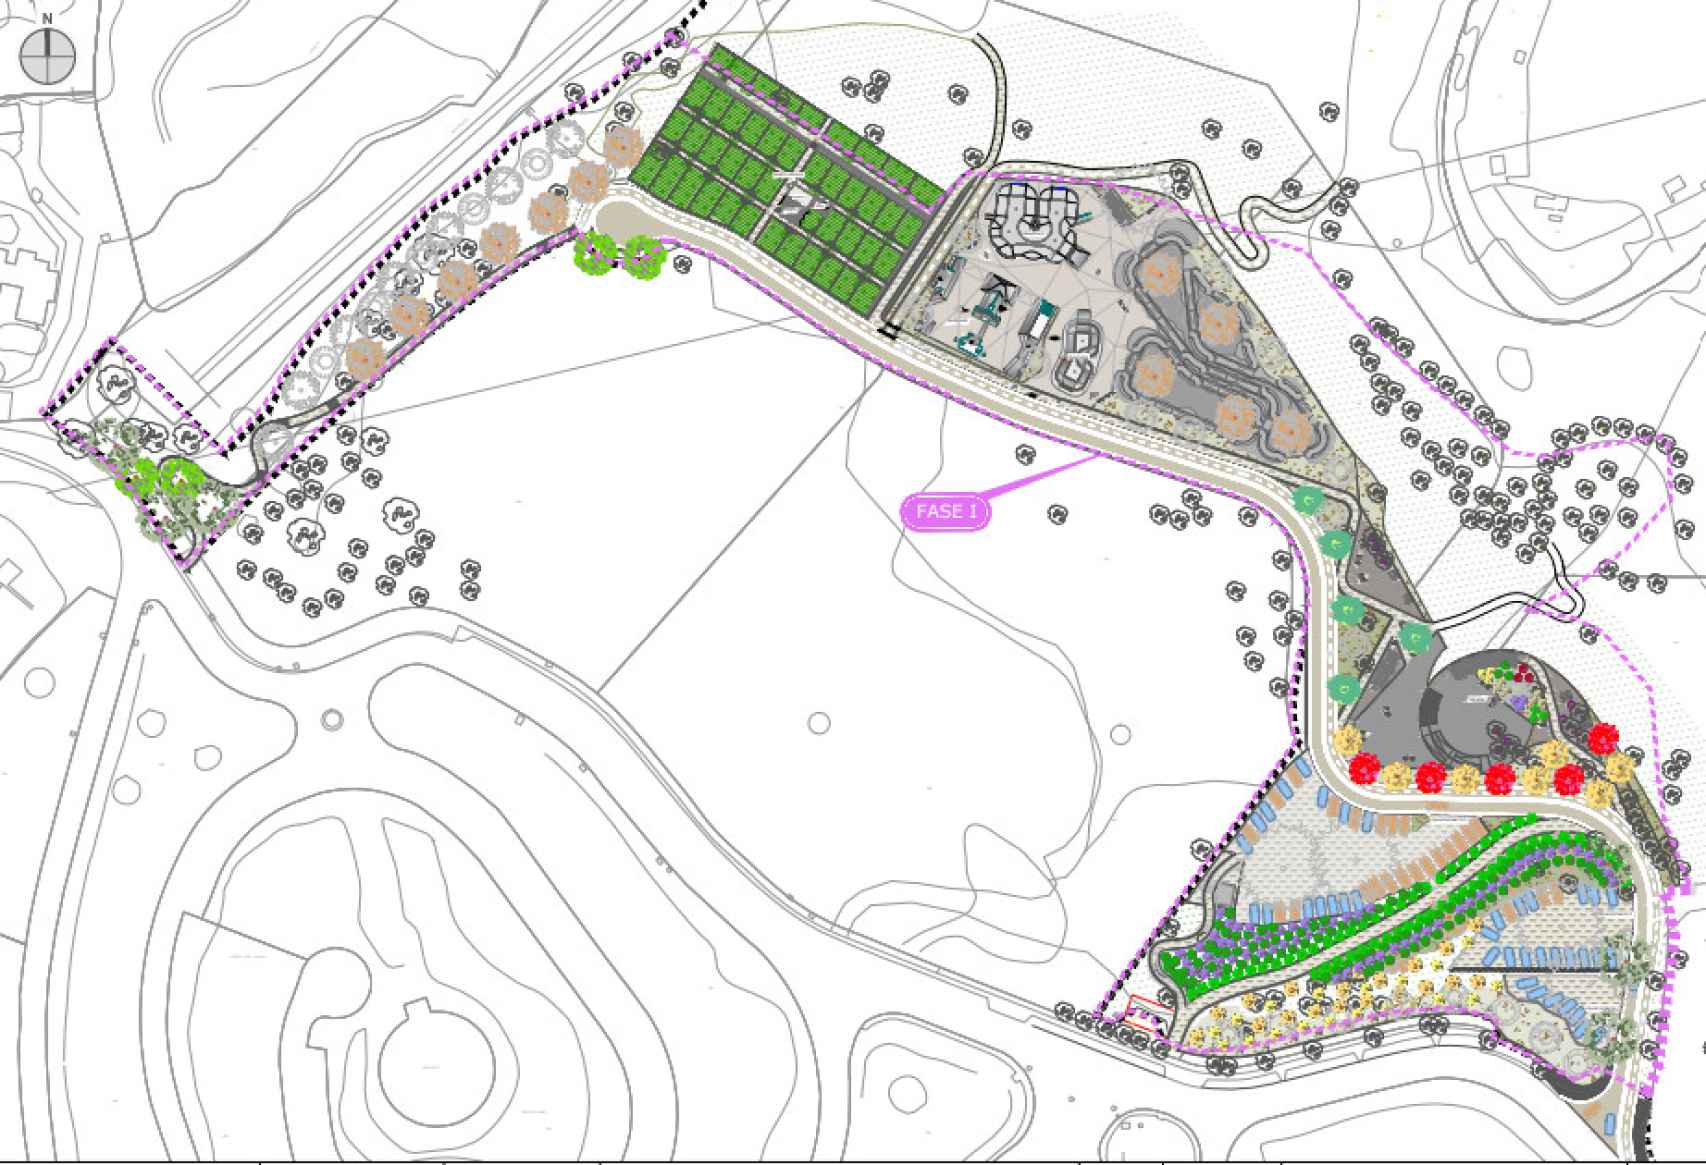 Diseño de la fase 1 del futuro parque.